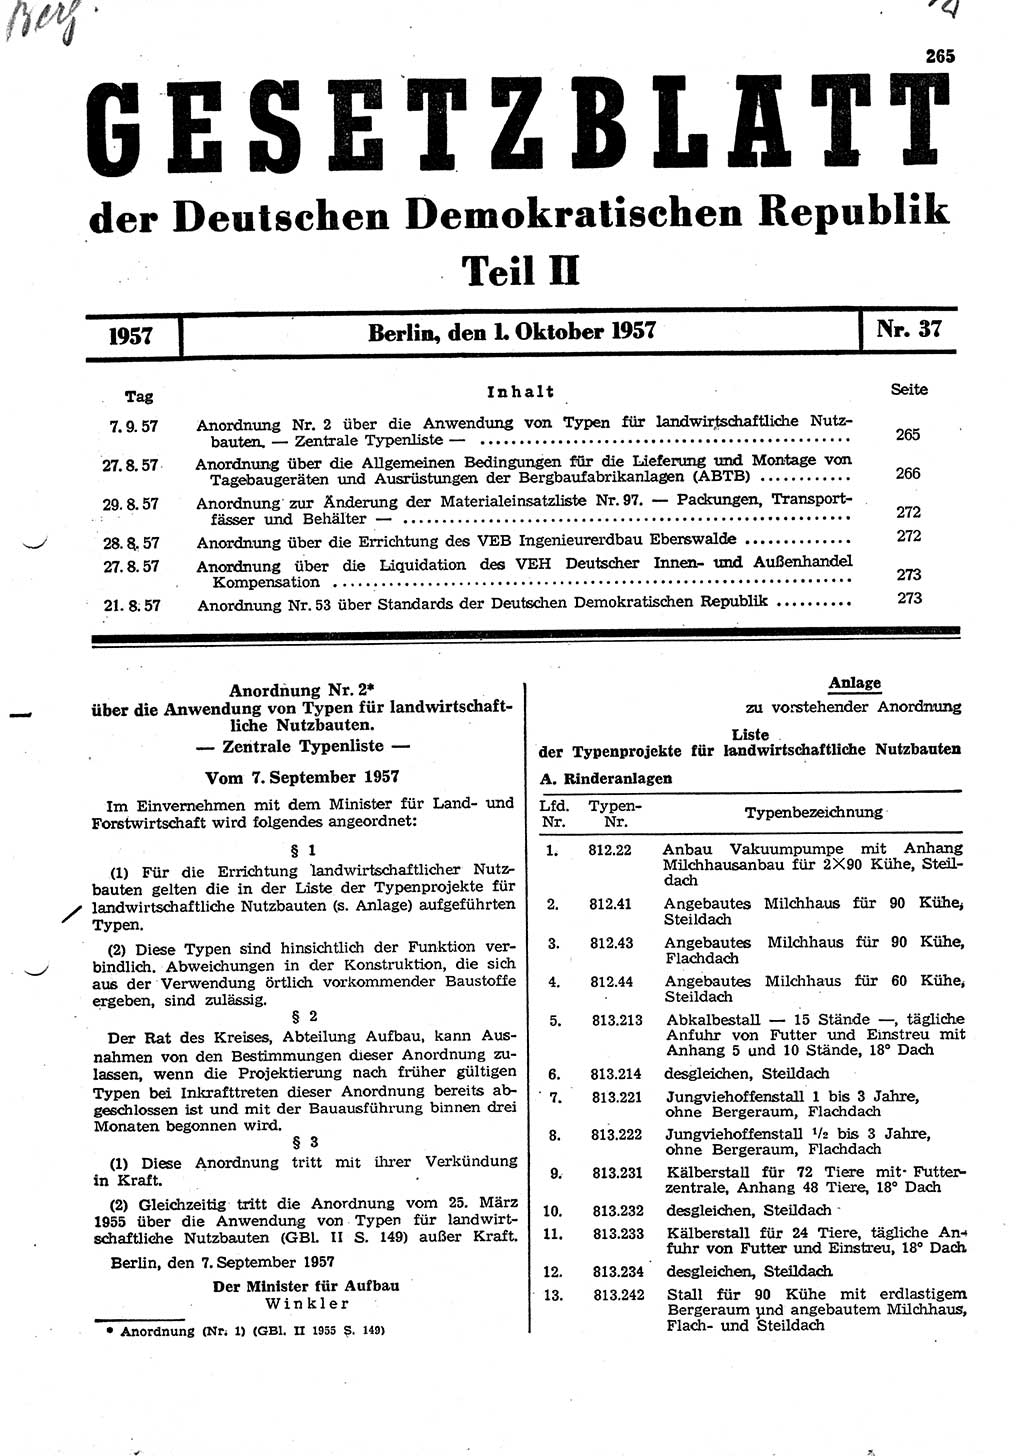 Gesetzblatt (GBl.) der Deutschen Demokratischen Republik (DDR) Teil ⅠⅠ 1957, Seite 265 (GBl. DDR ⅠⅠ 1957, S. 265)